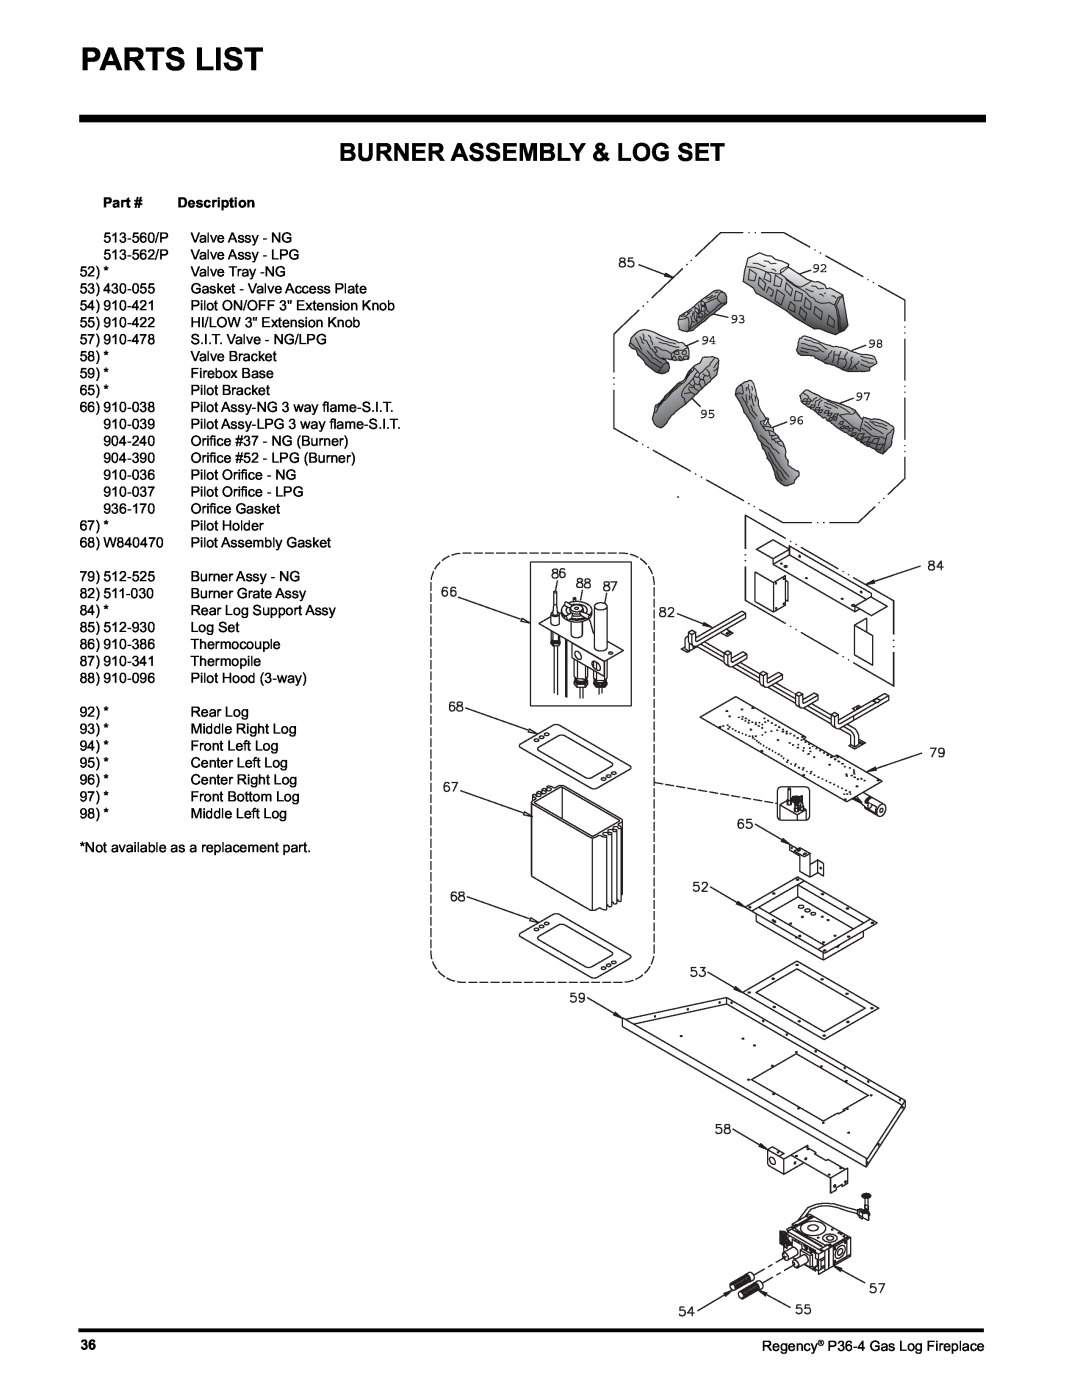 Regency Wraps P36-LPG4, P36-NG4 manual Burner Assembly & Log Set, Description 